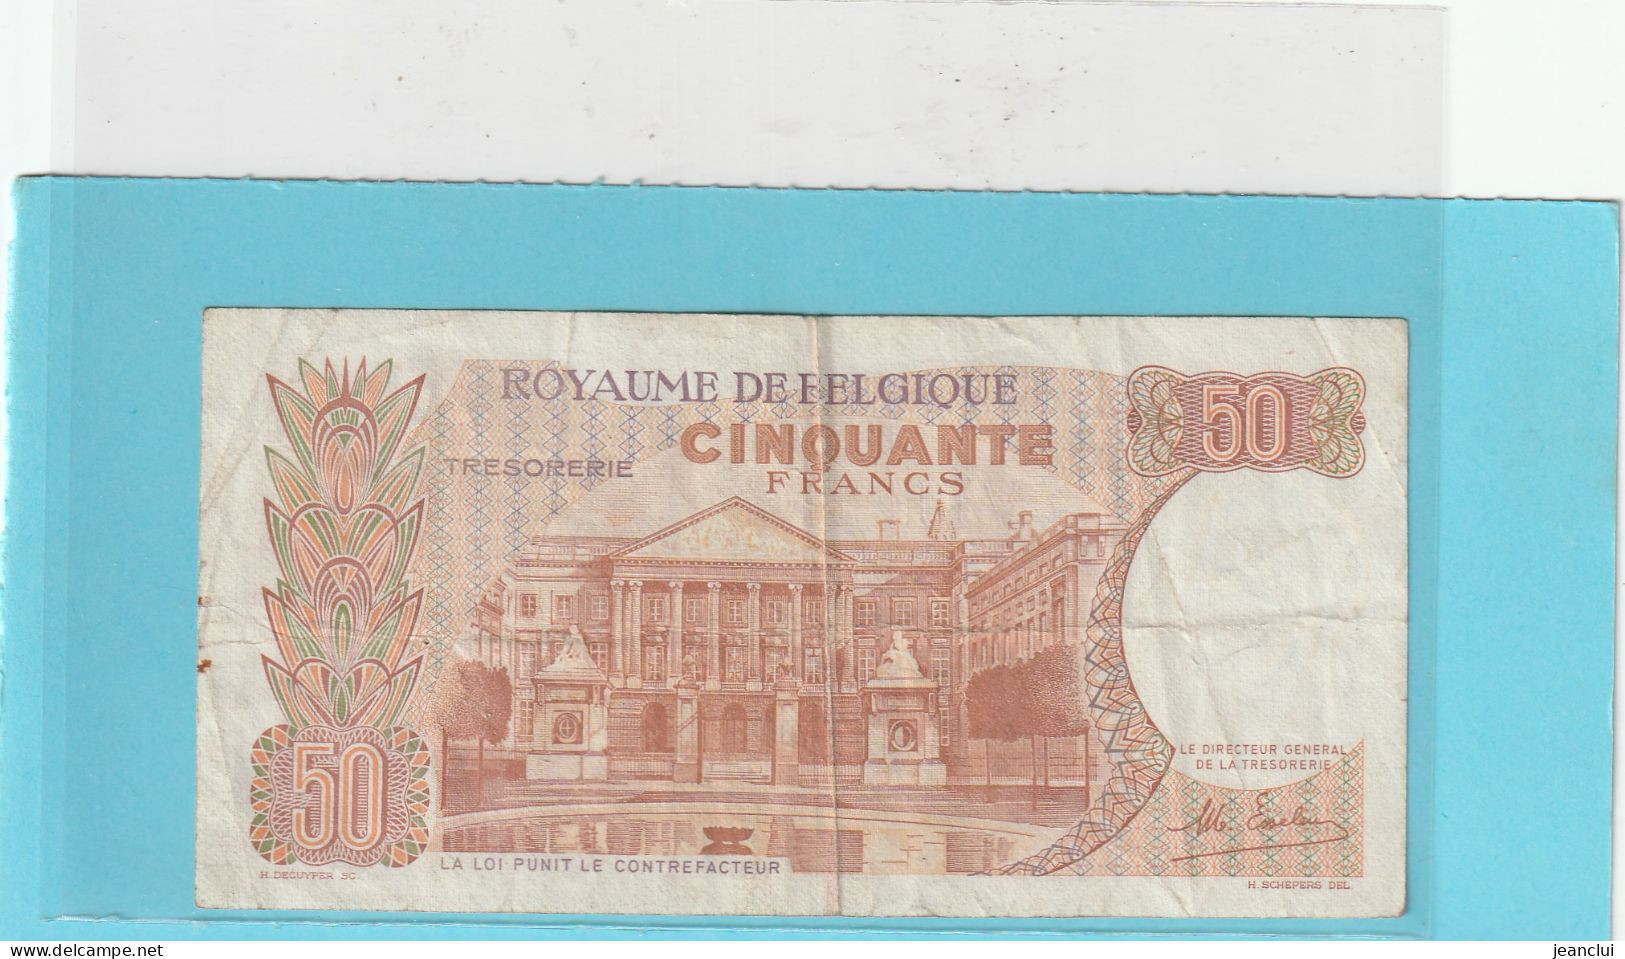 ROYAUME DE BELGIQUE  .  TRESORERIE  .  50 FRANCS . 16-5-1966 .  N° 177113993  .  2 SCANNES - 50 Francs